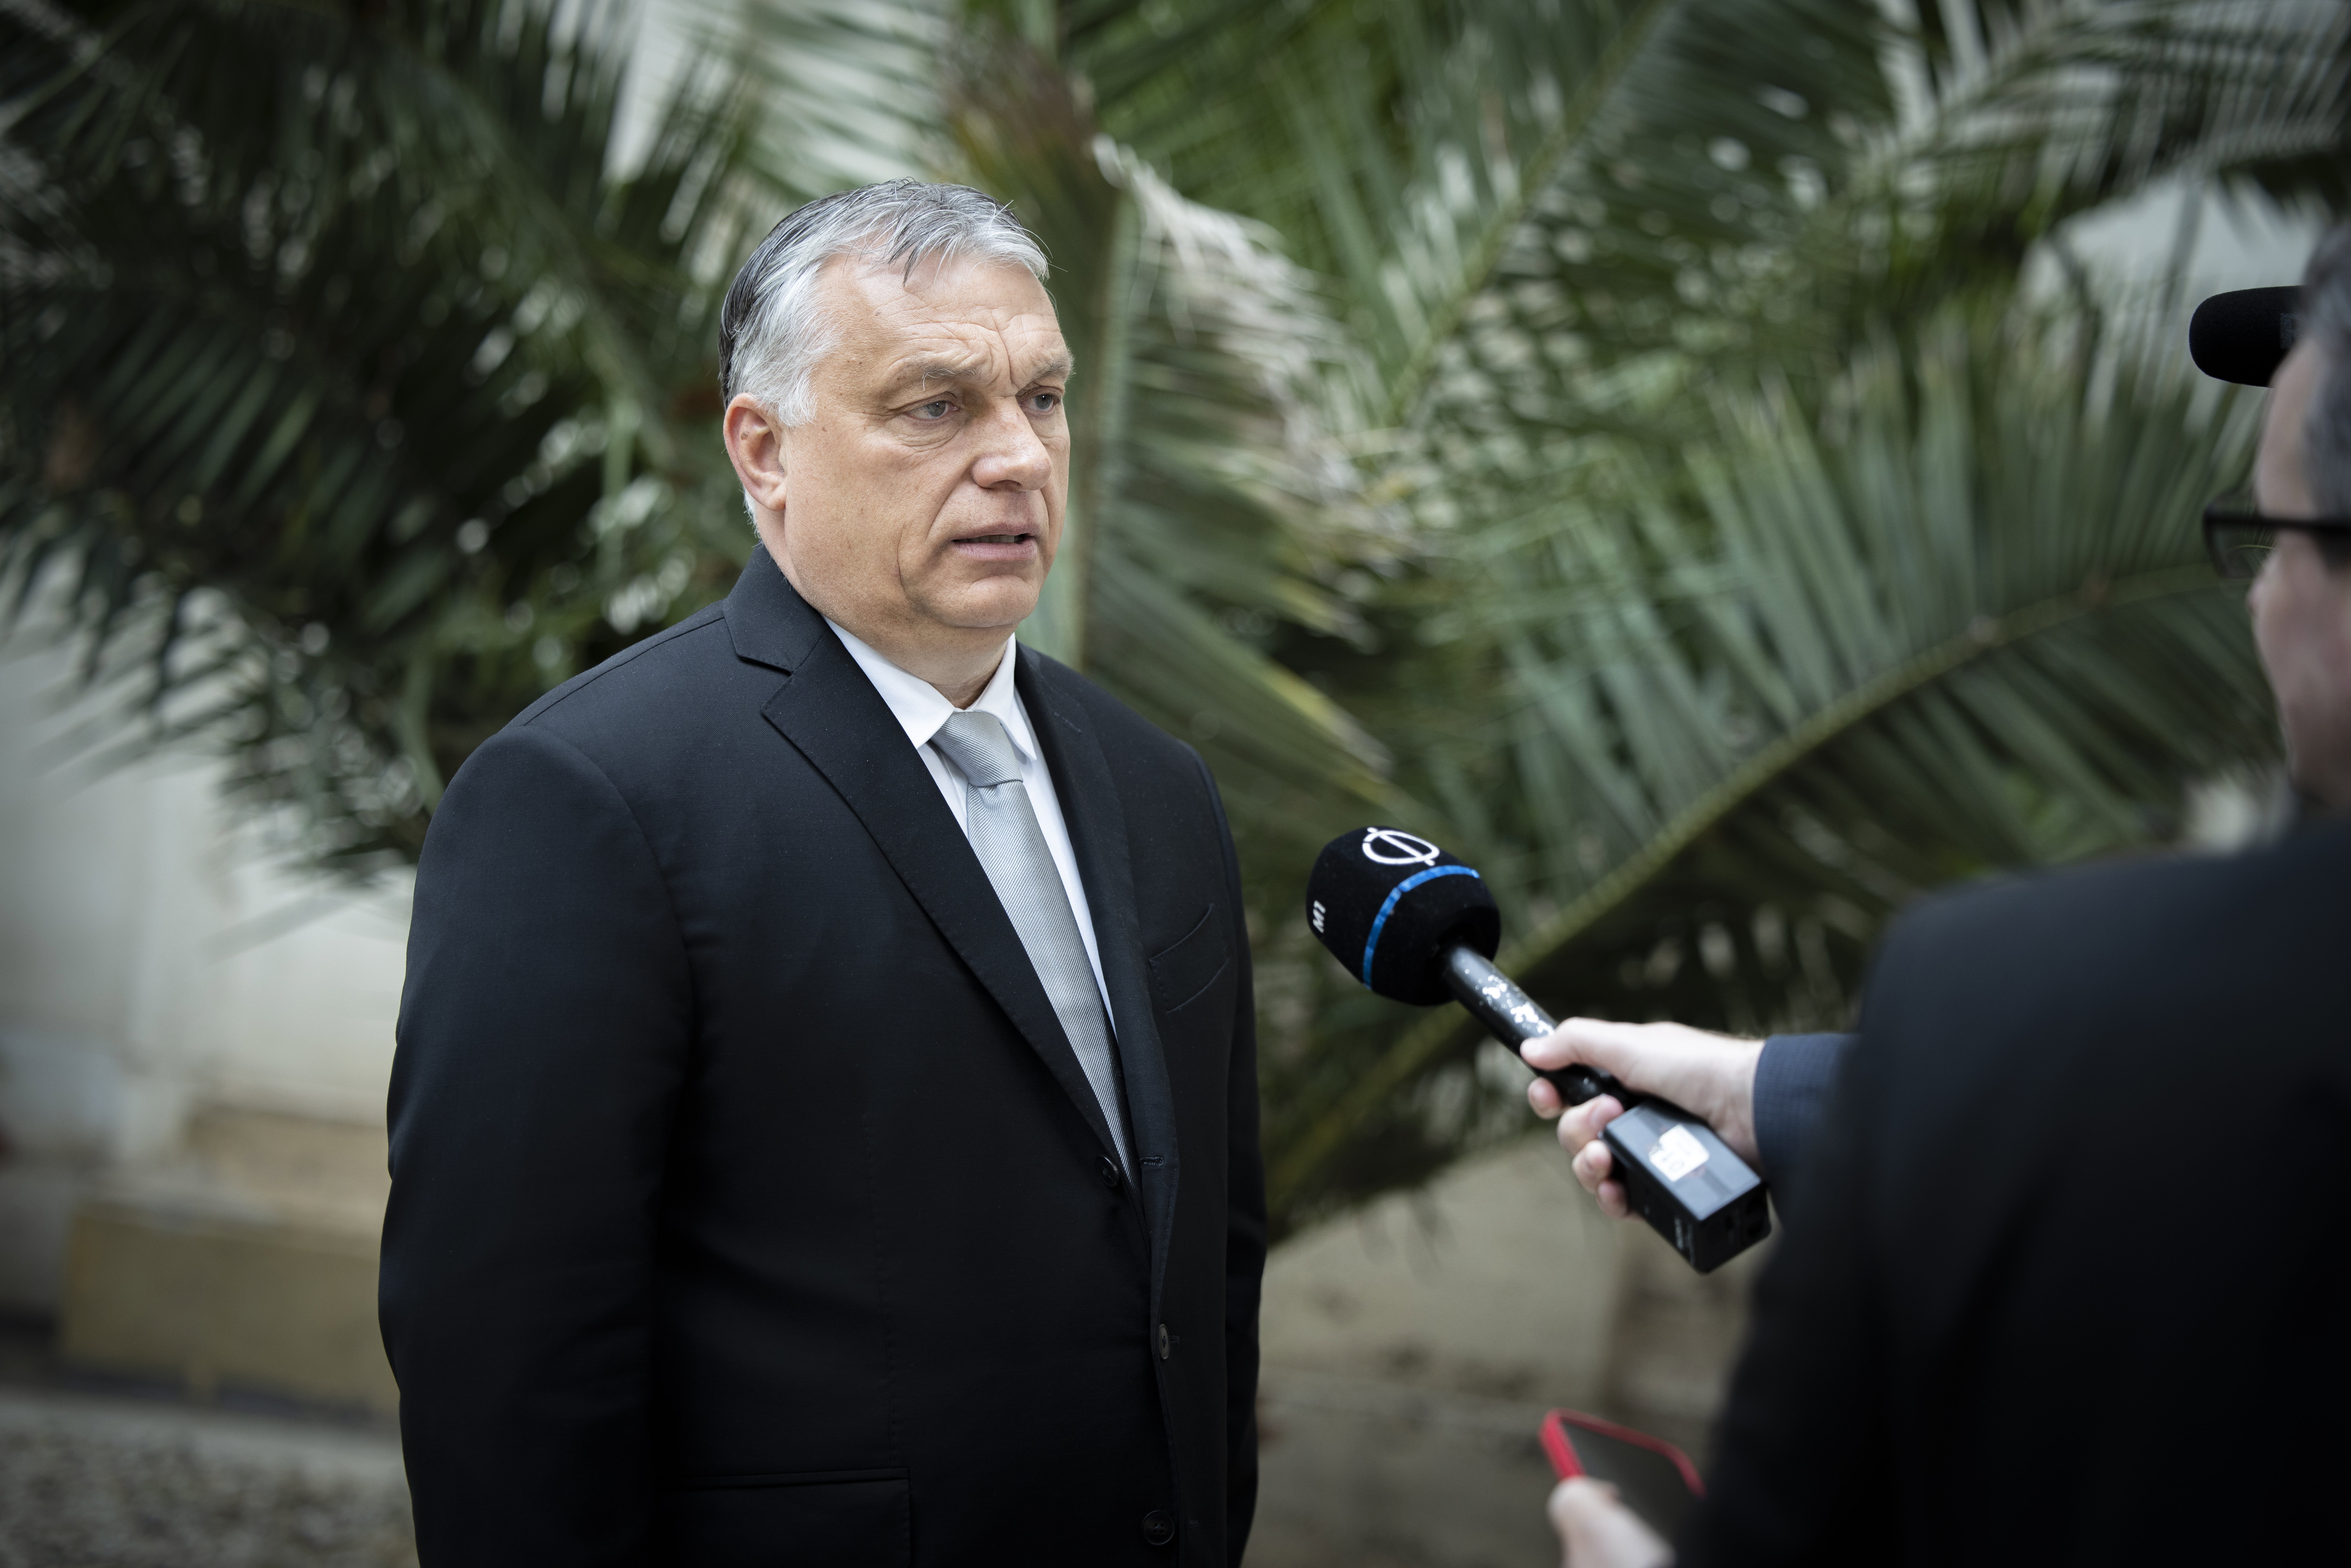 Hatalmas pofont adott a Fidesznek a lengyel kormány – végleg magukra maradtak Orbánék? 